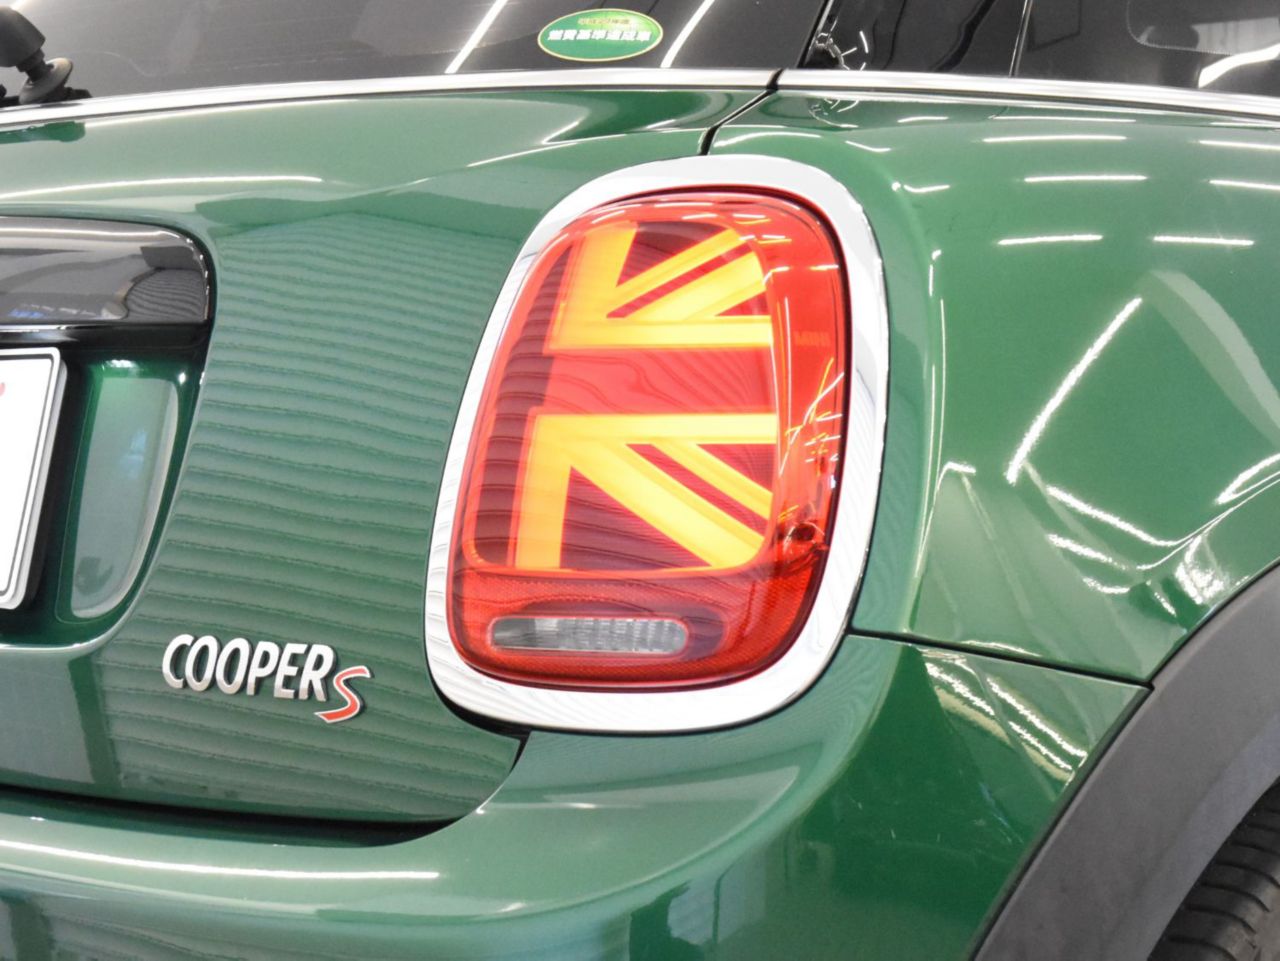 Cooper S 5 doors